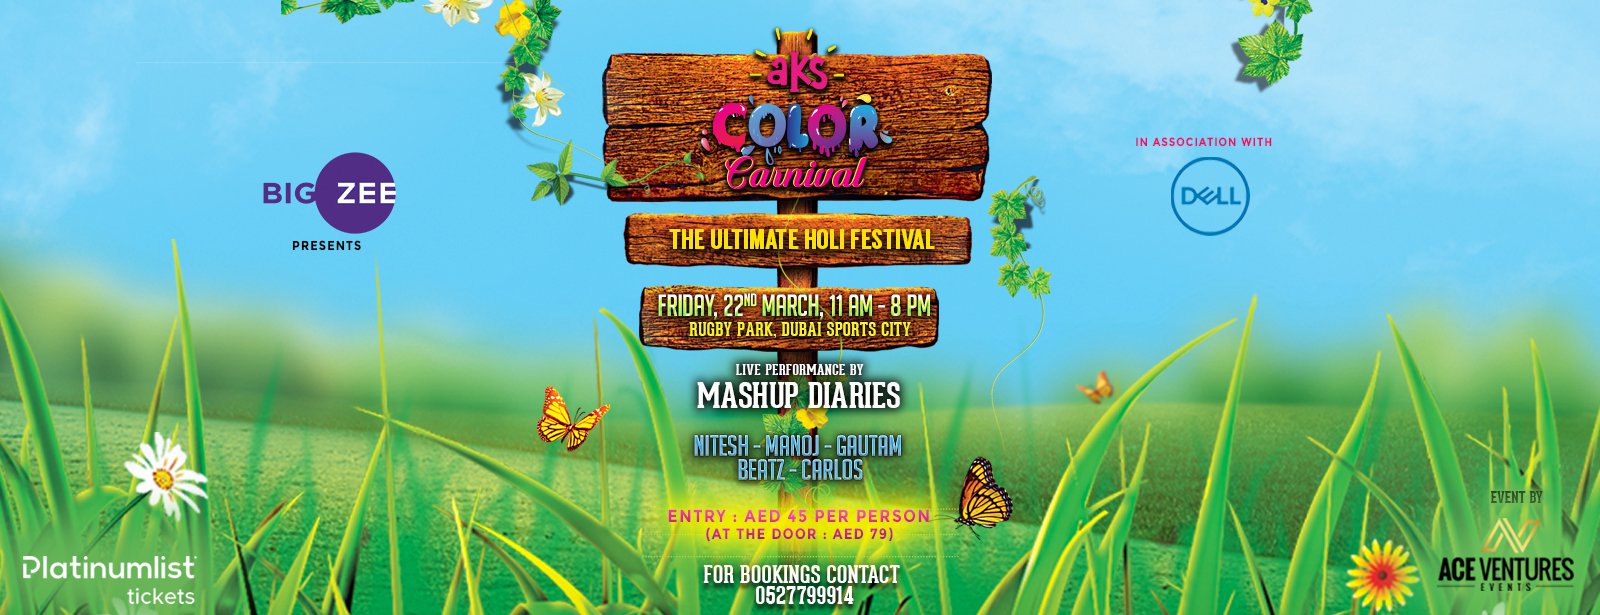 AKS Color Carnival 2019 - Coming Soon in UAE